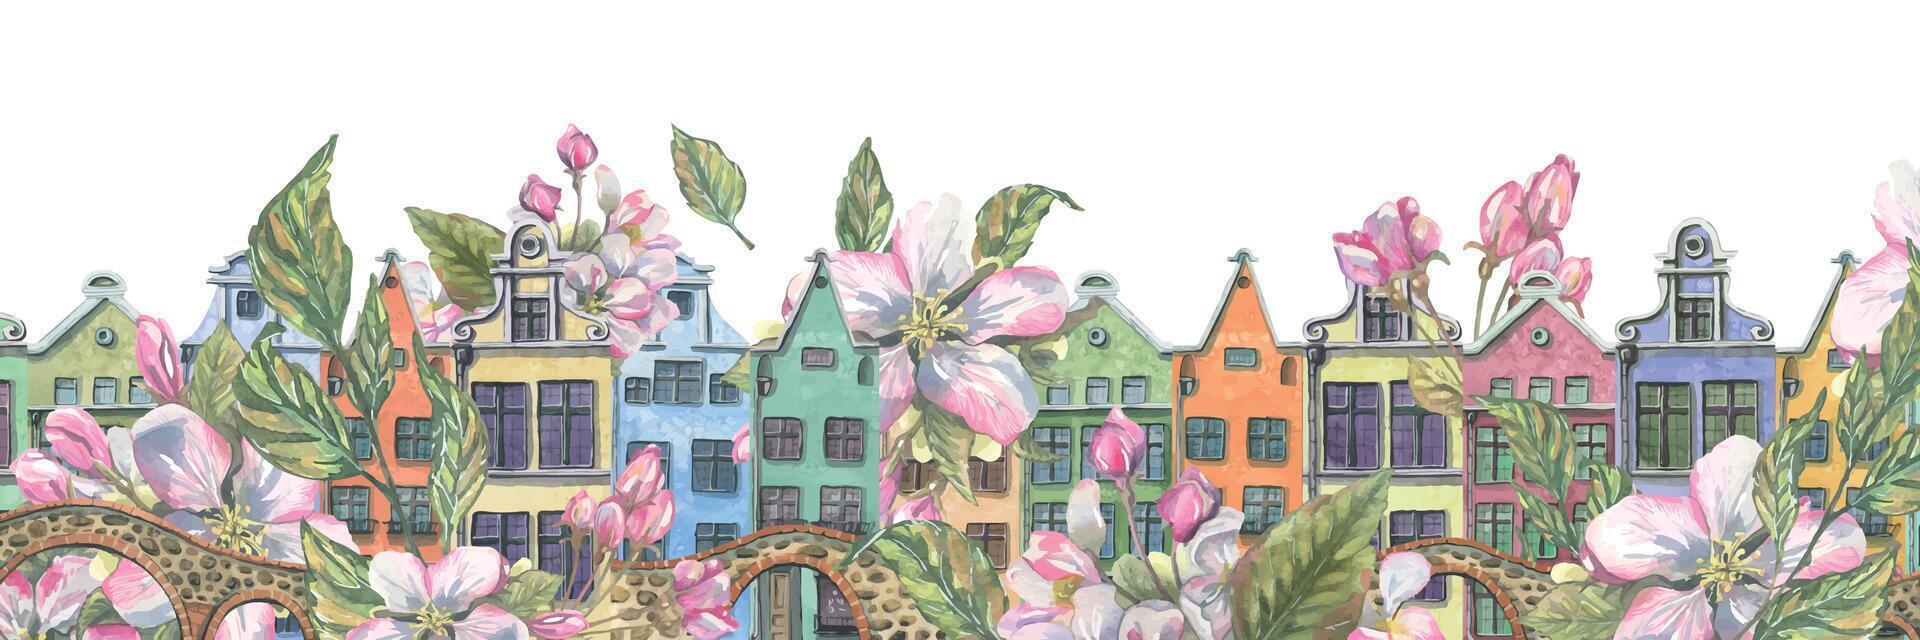 linda europeo pequeño casas con Roca puentes y primavera, rosado manzana flores acuarela ilustración. un largo bandera desde el colección de europeo casas para decoración y diseño vector